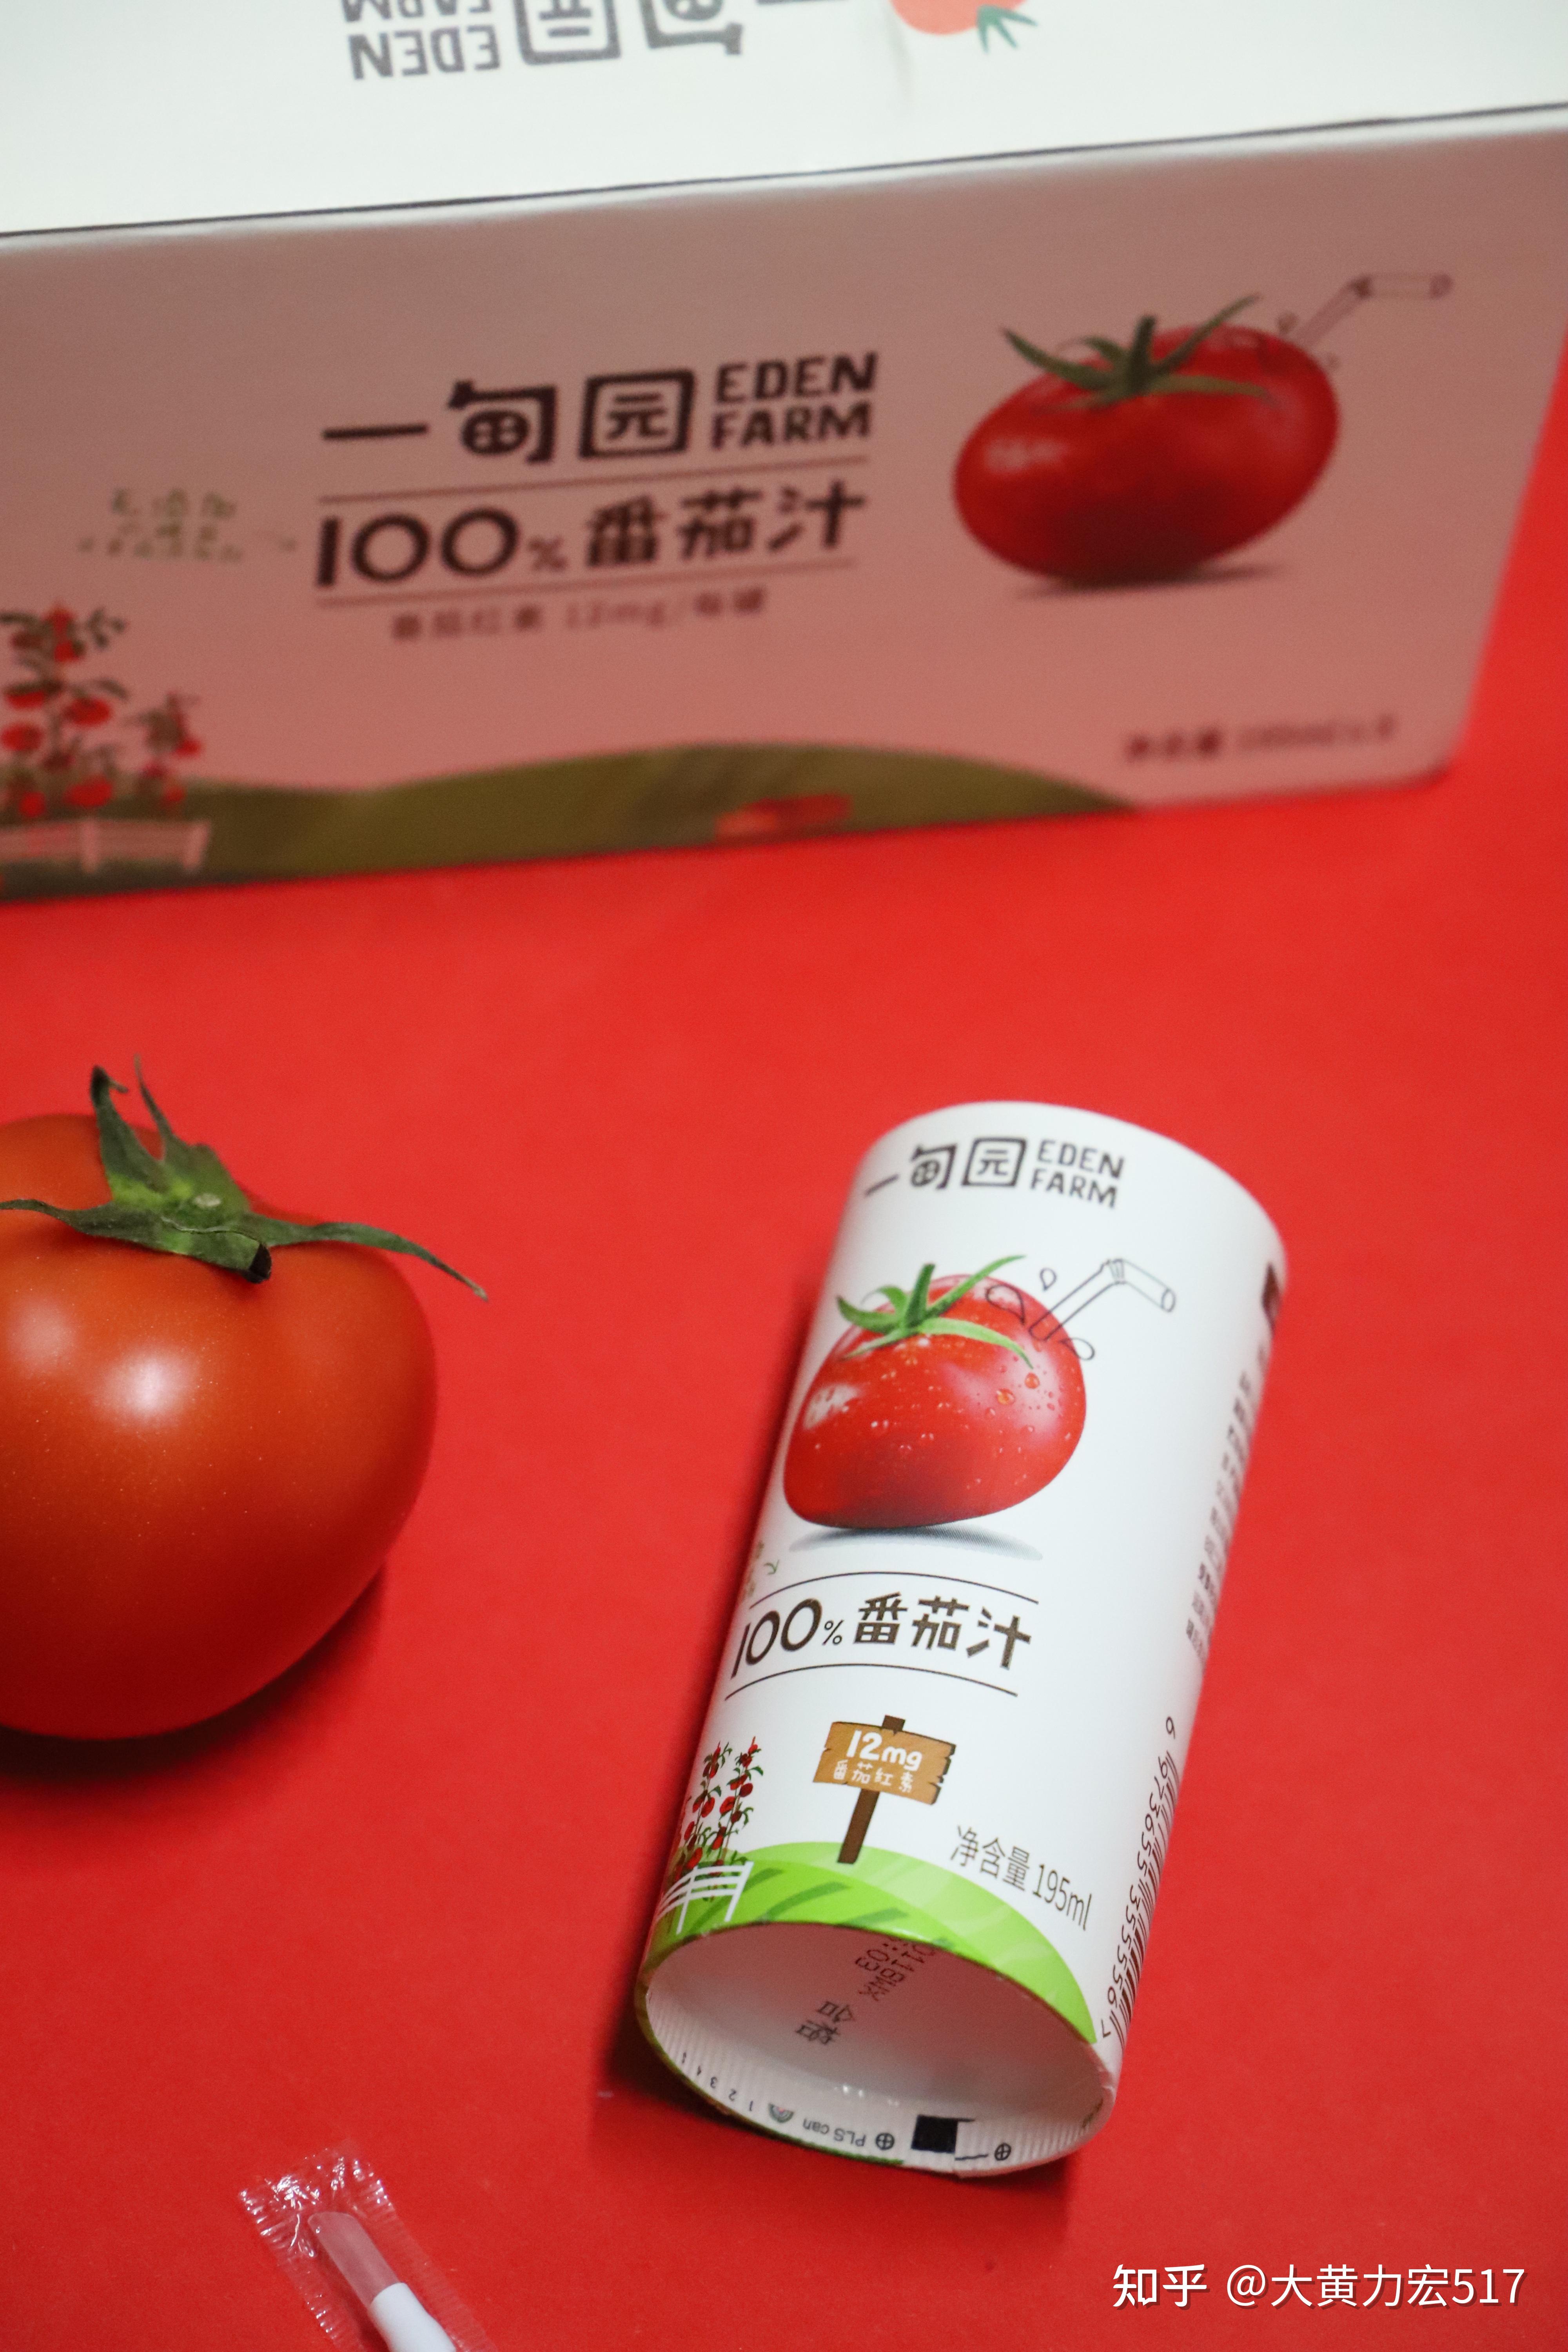 新鲜的西红柿汁用切的蕃茄 库存图片. 图片 包括有 å†·é ™, ç§¸æ †, å ¥åº·, å†· - 52708887